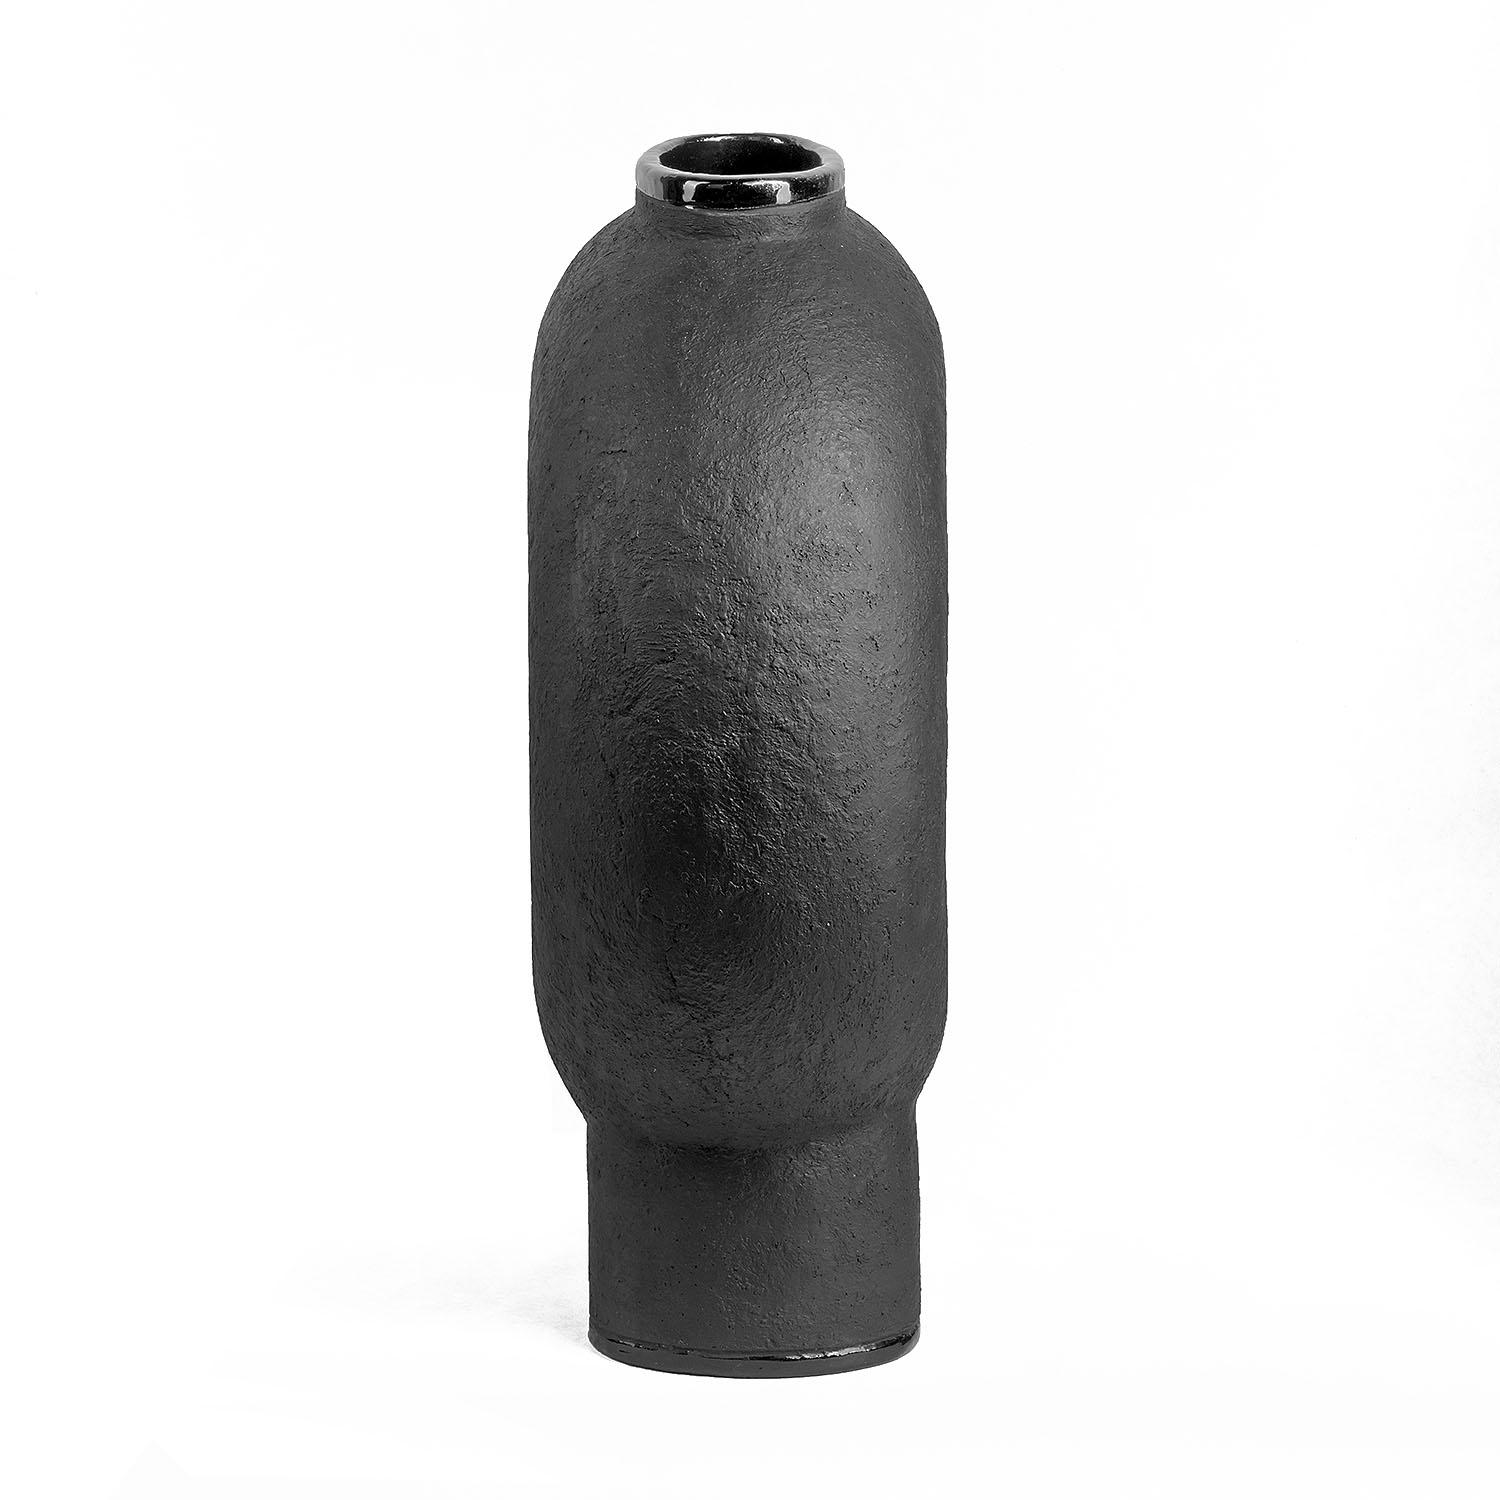 Vase contemporain en céramique noire sculptée - Vase à deux pieds Kumanec de Faina

Design : Victoriya Yakusha
Matériau : Matériau : argile / céramique
Dimensions :
Petit : 20,5 x 9 x H 19 cm
Bigli : 31,5 x 15 x H 50 cm


(